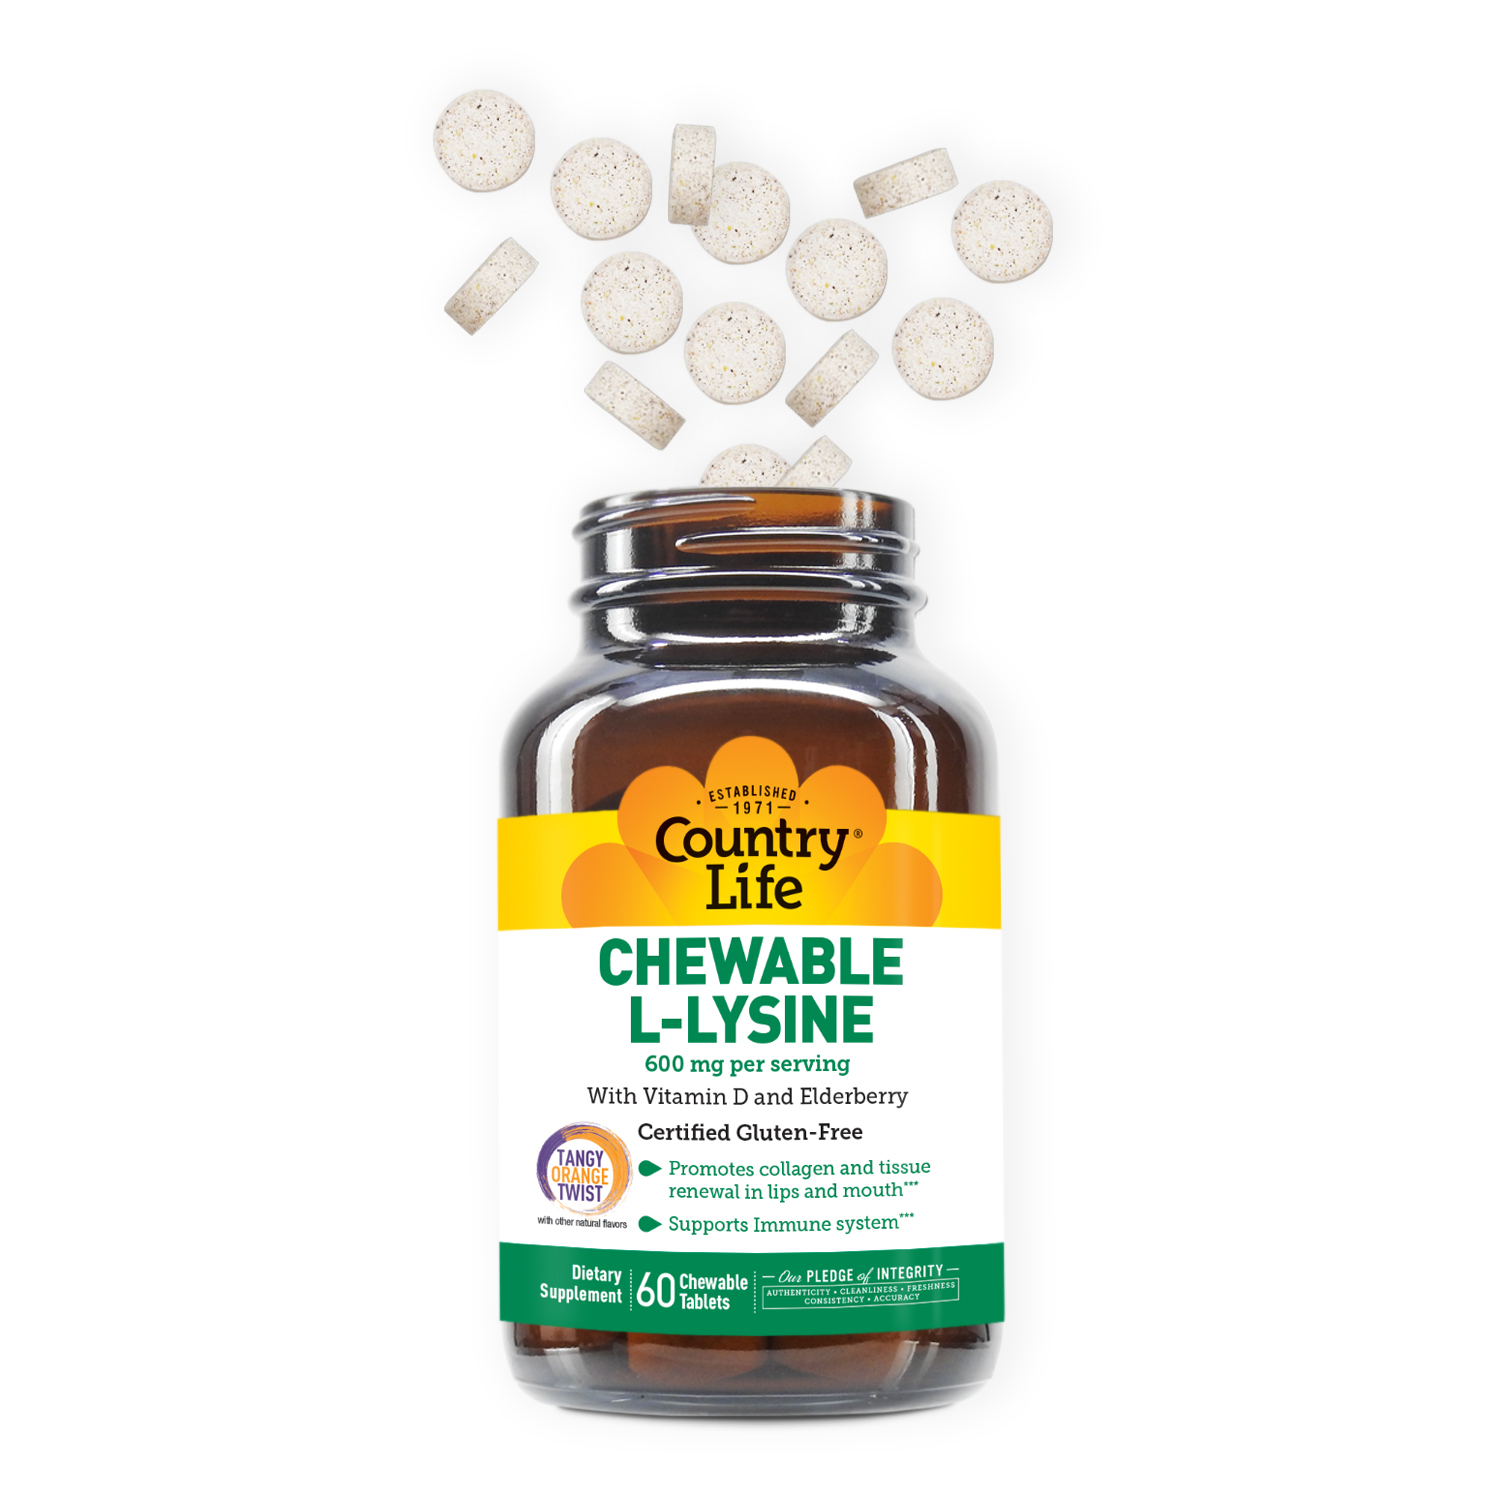 Chewable L-Lysine